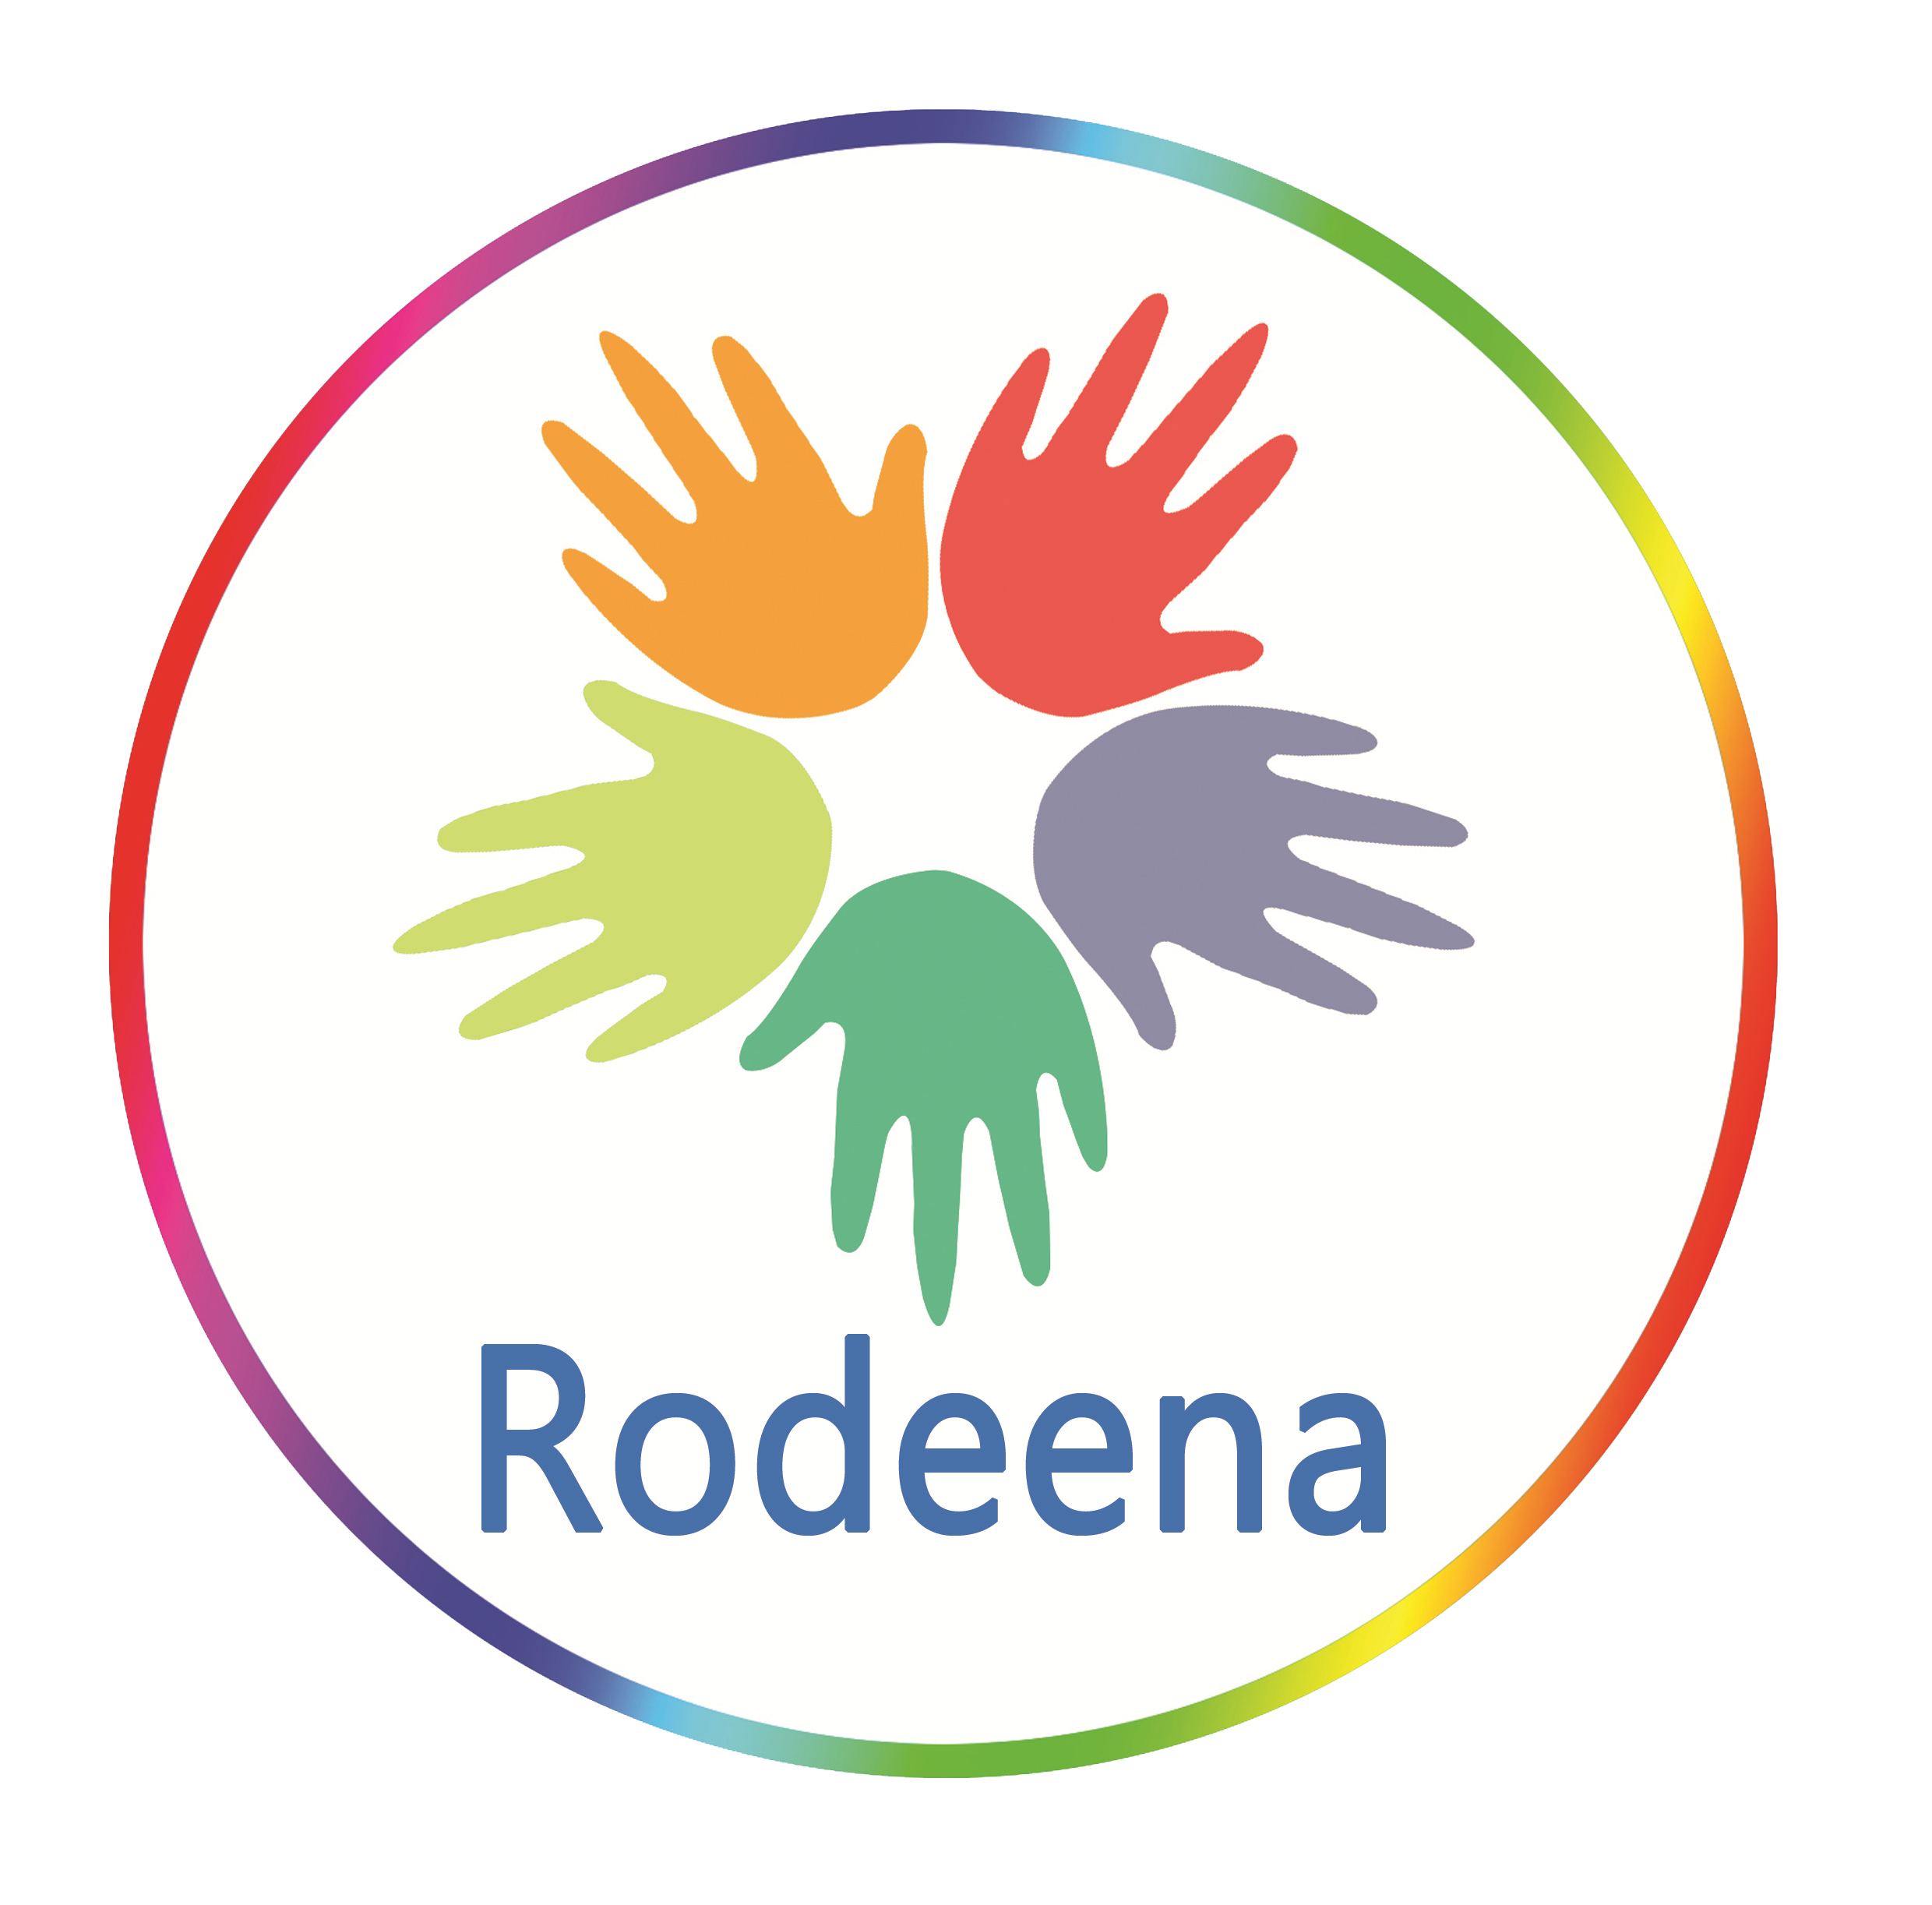 www.rodeena.net